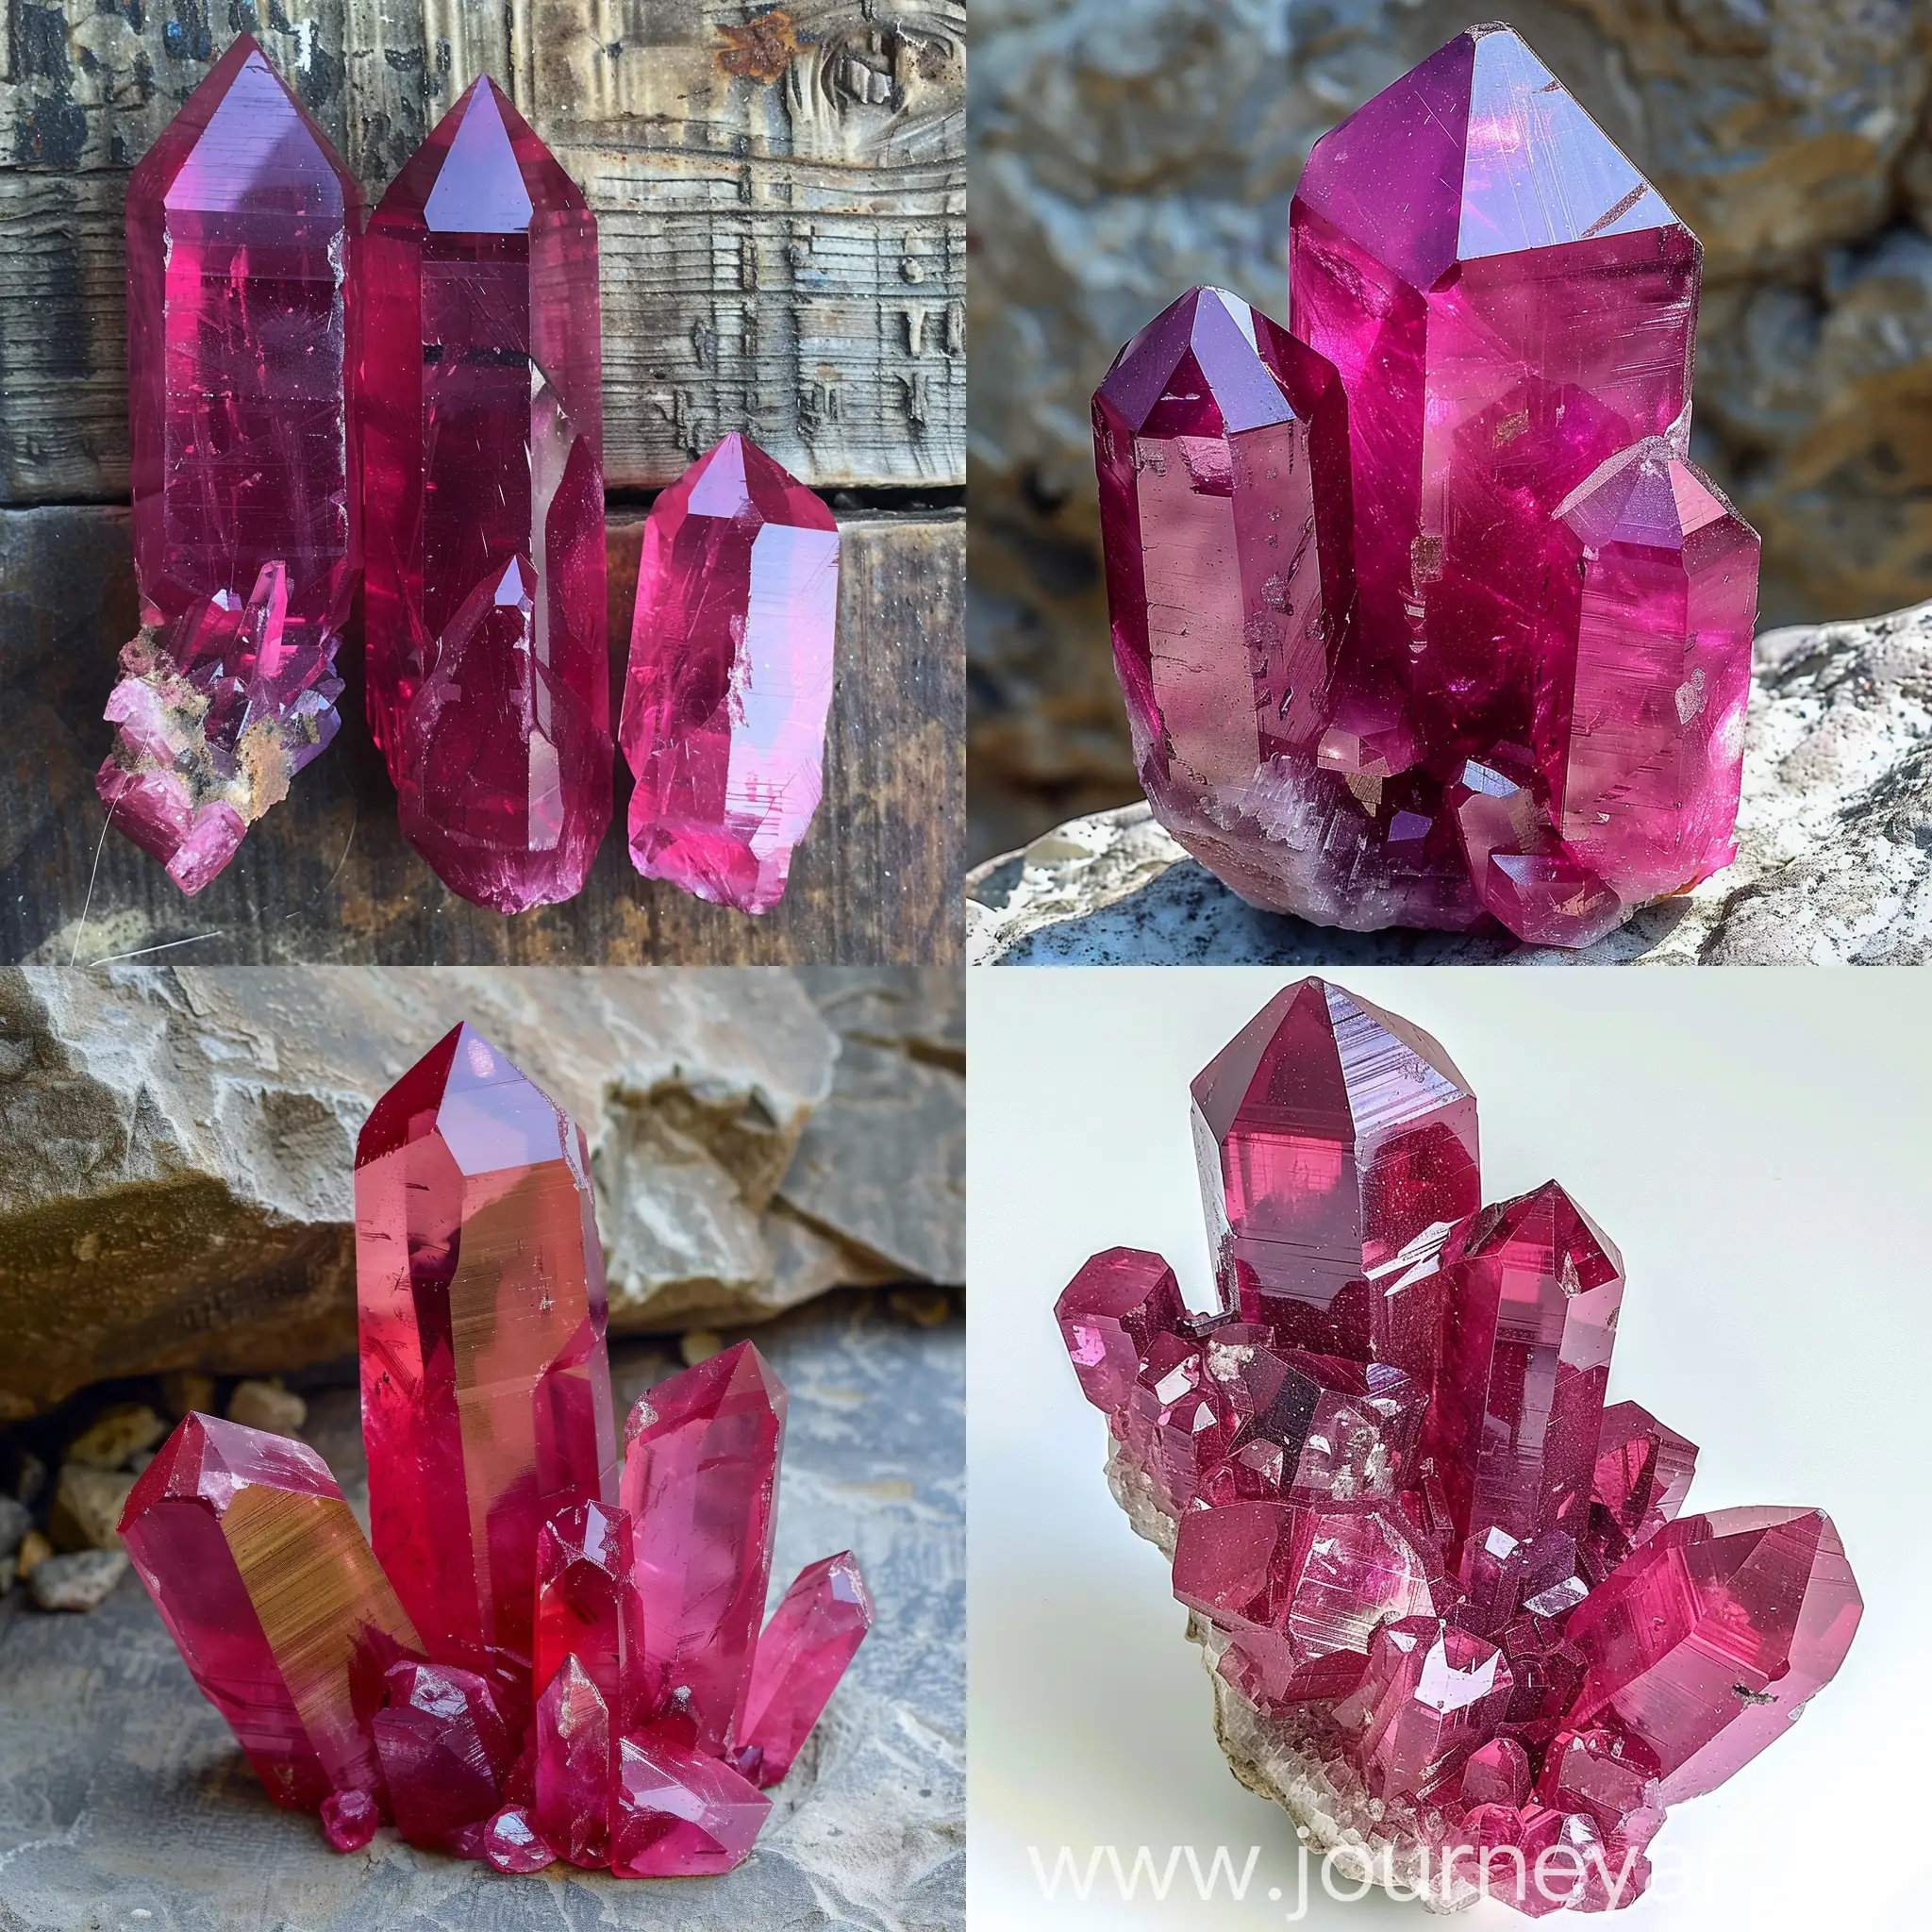 Vivid-Ruby-Crystals-Towering-Tall